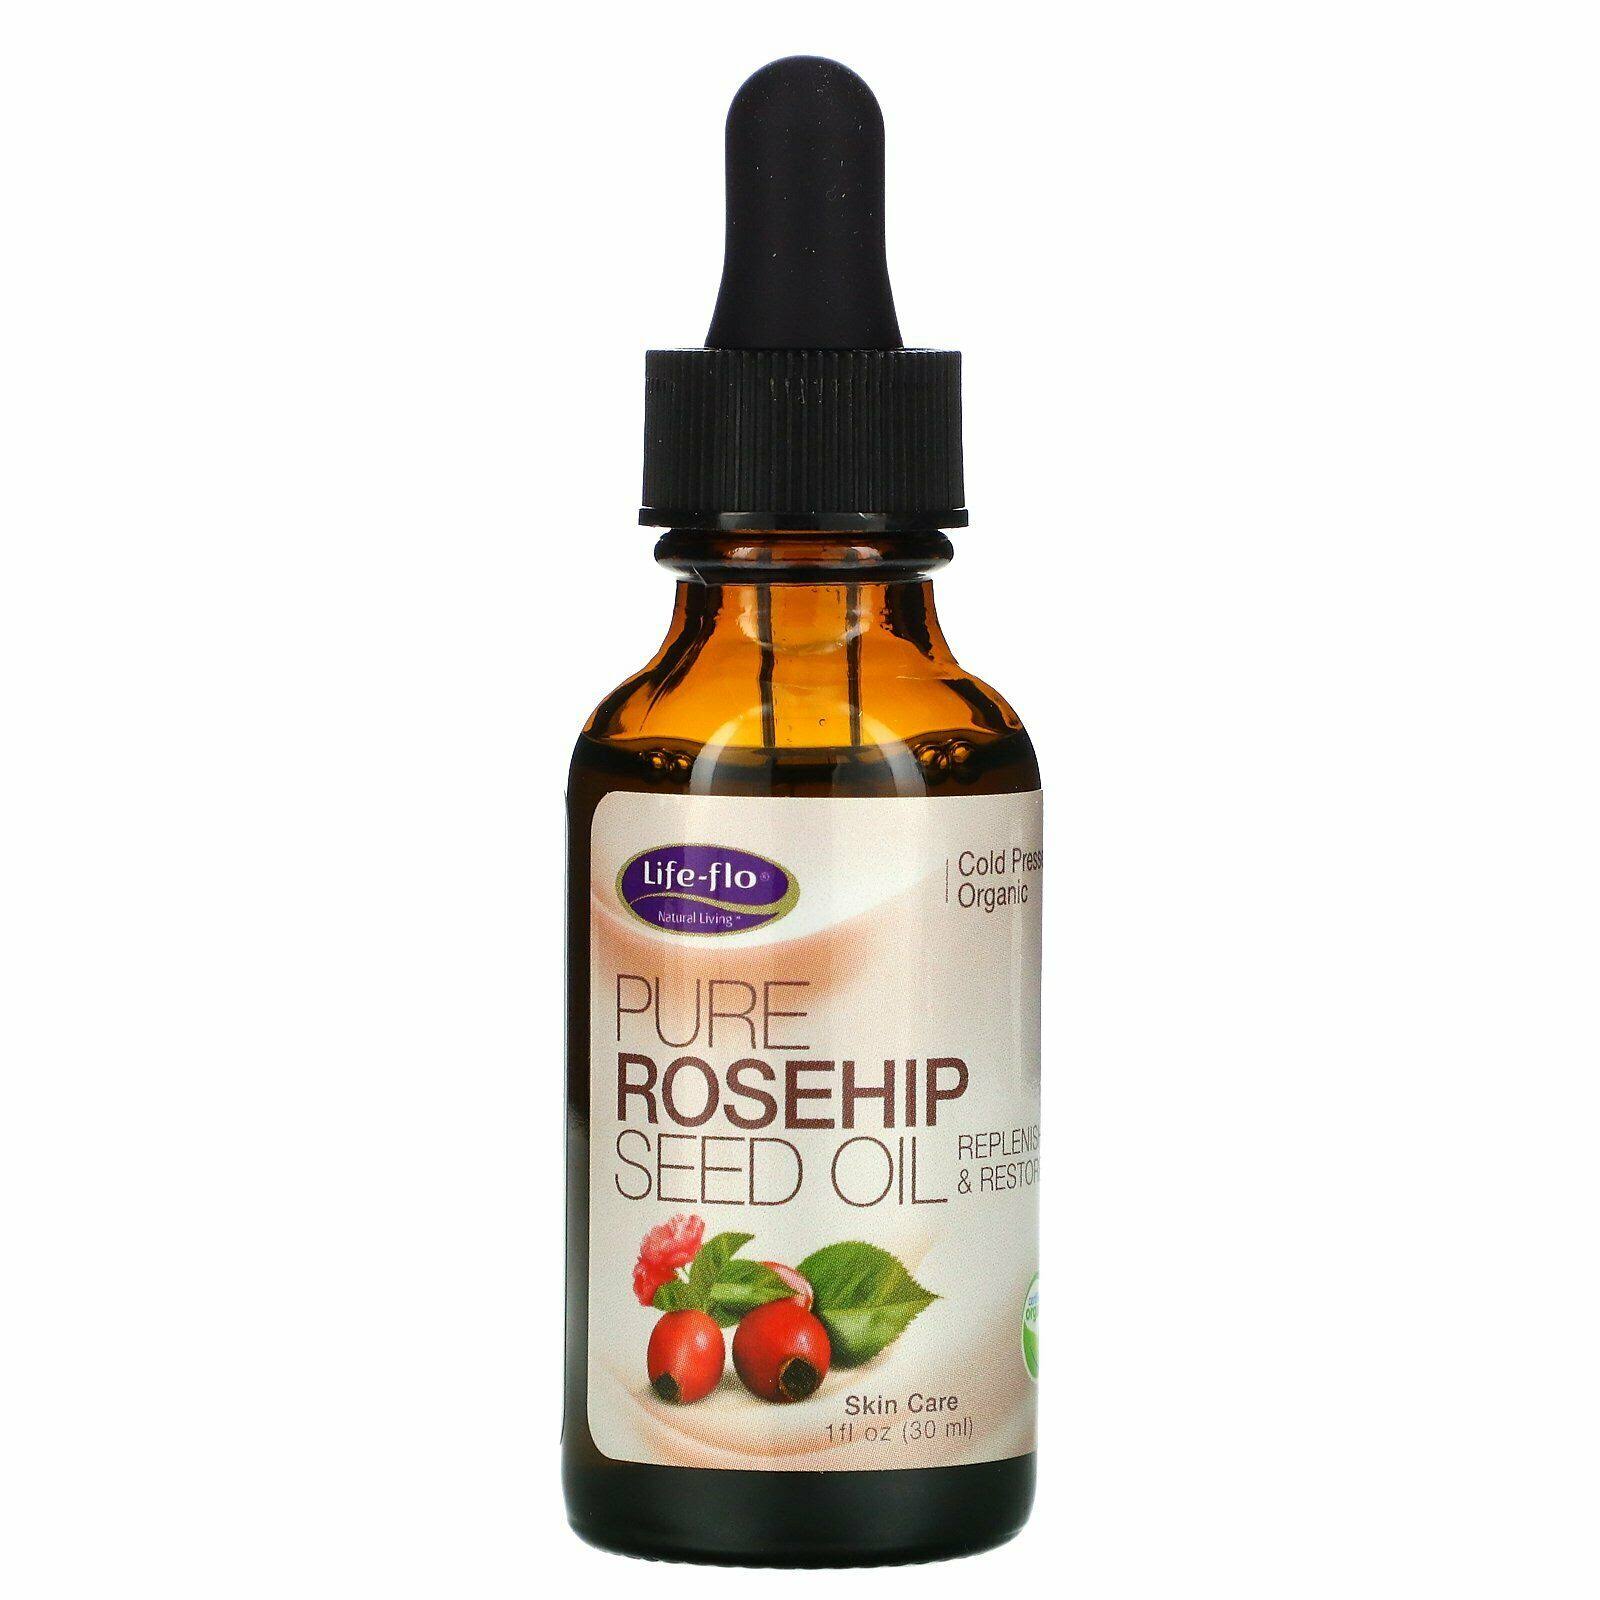 Life-flo Pure Seed Oil - Rosehip, 30ml